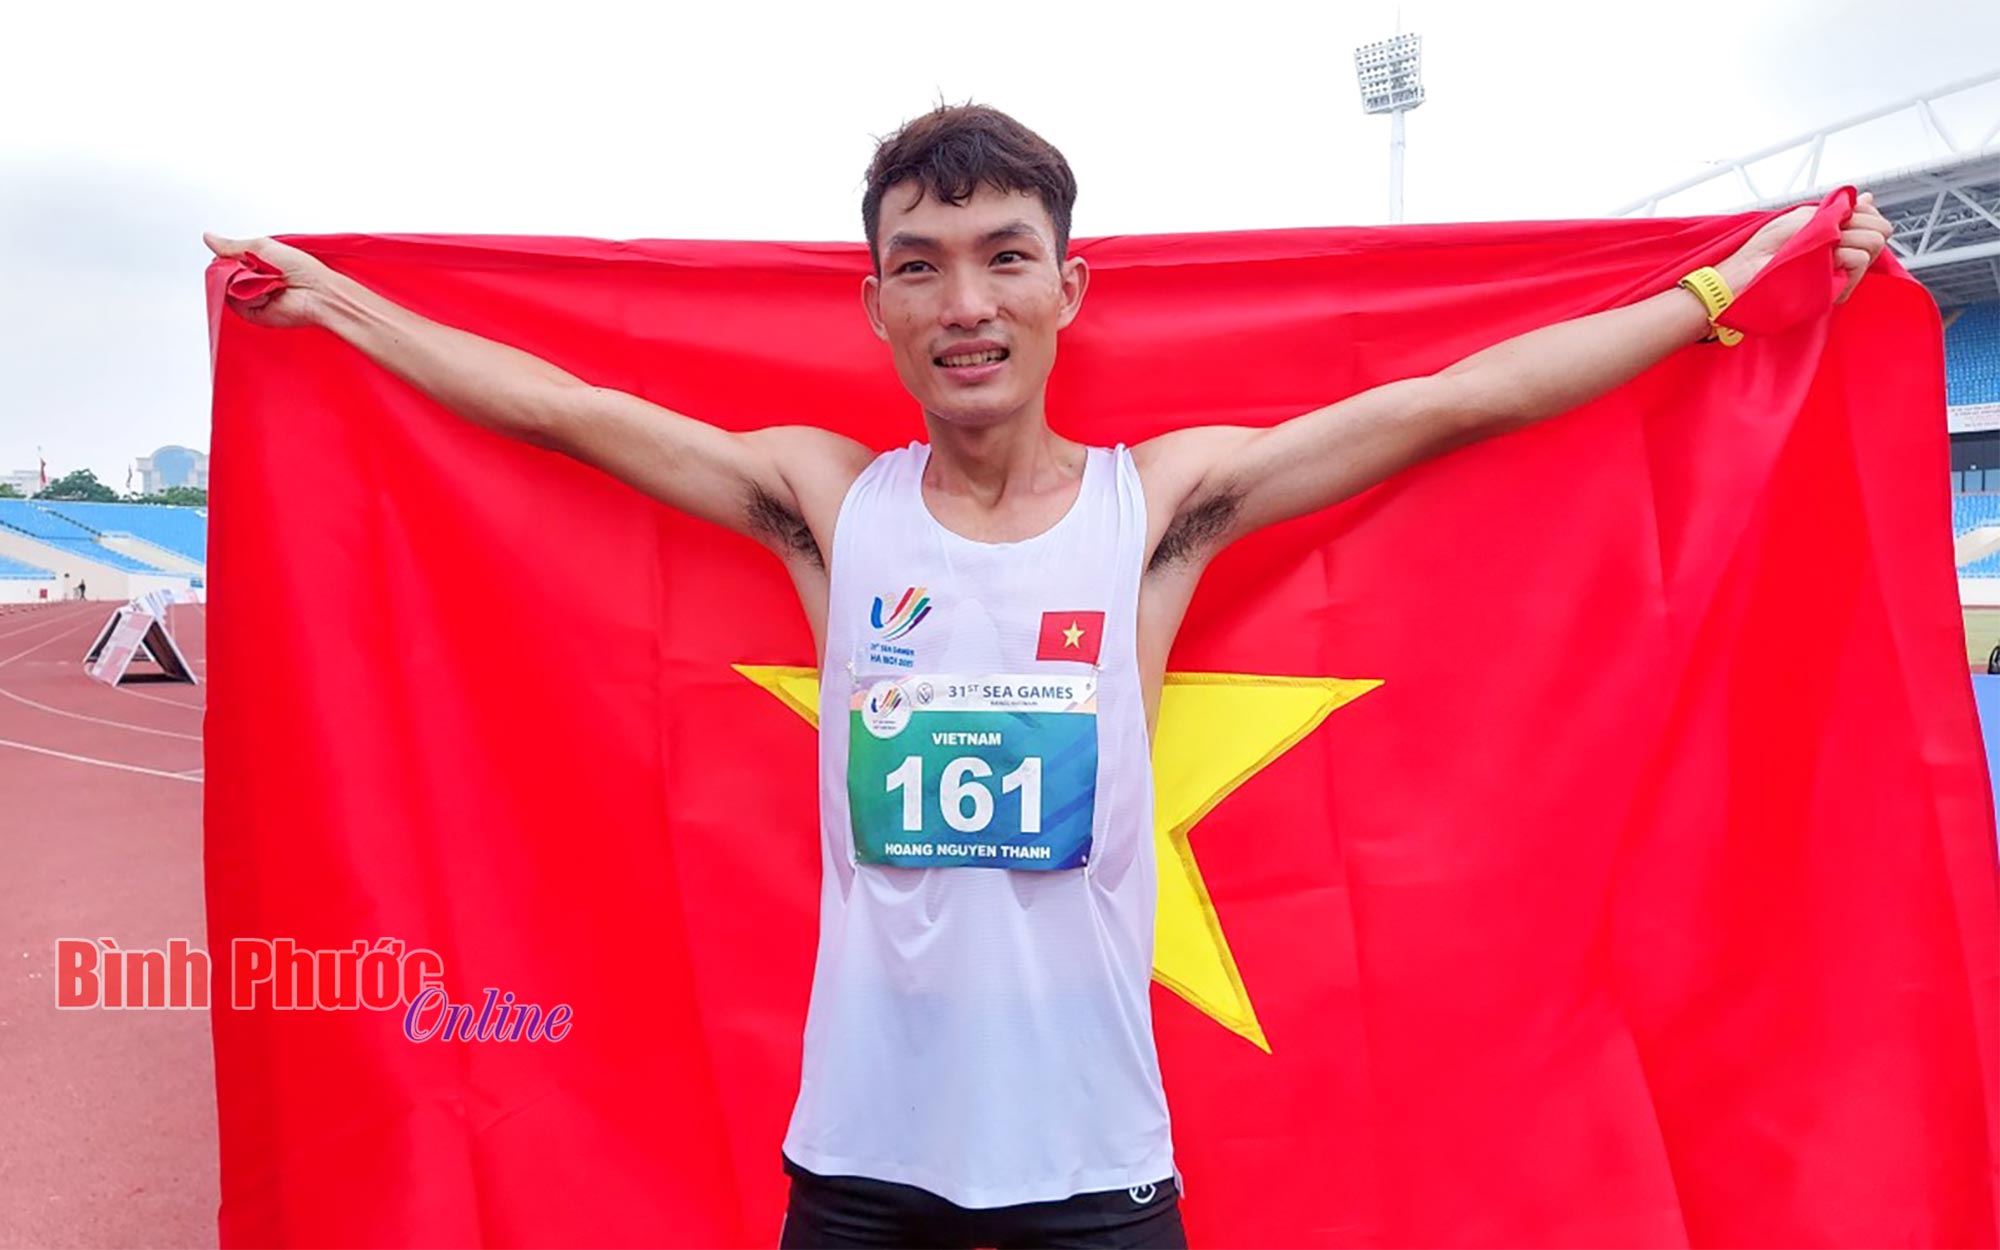 Hoàng Nguyên Thanh - xứng danh “Ông hoàng marathon Việt Nam”